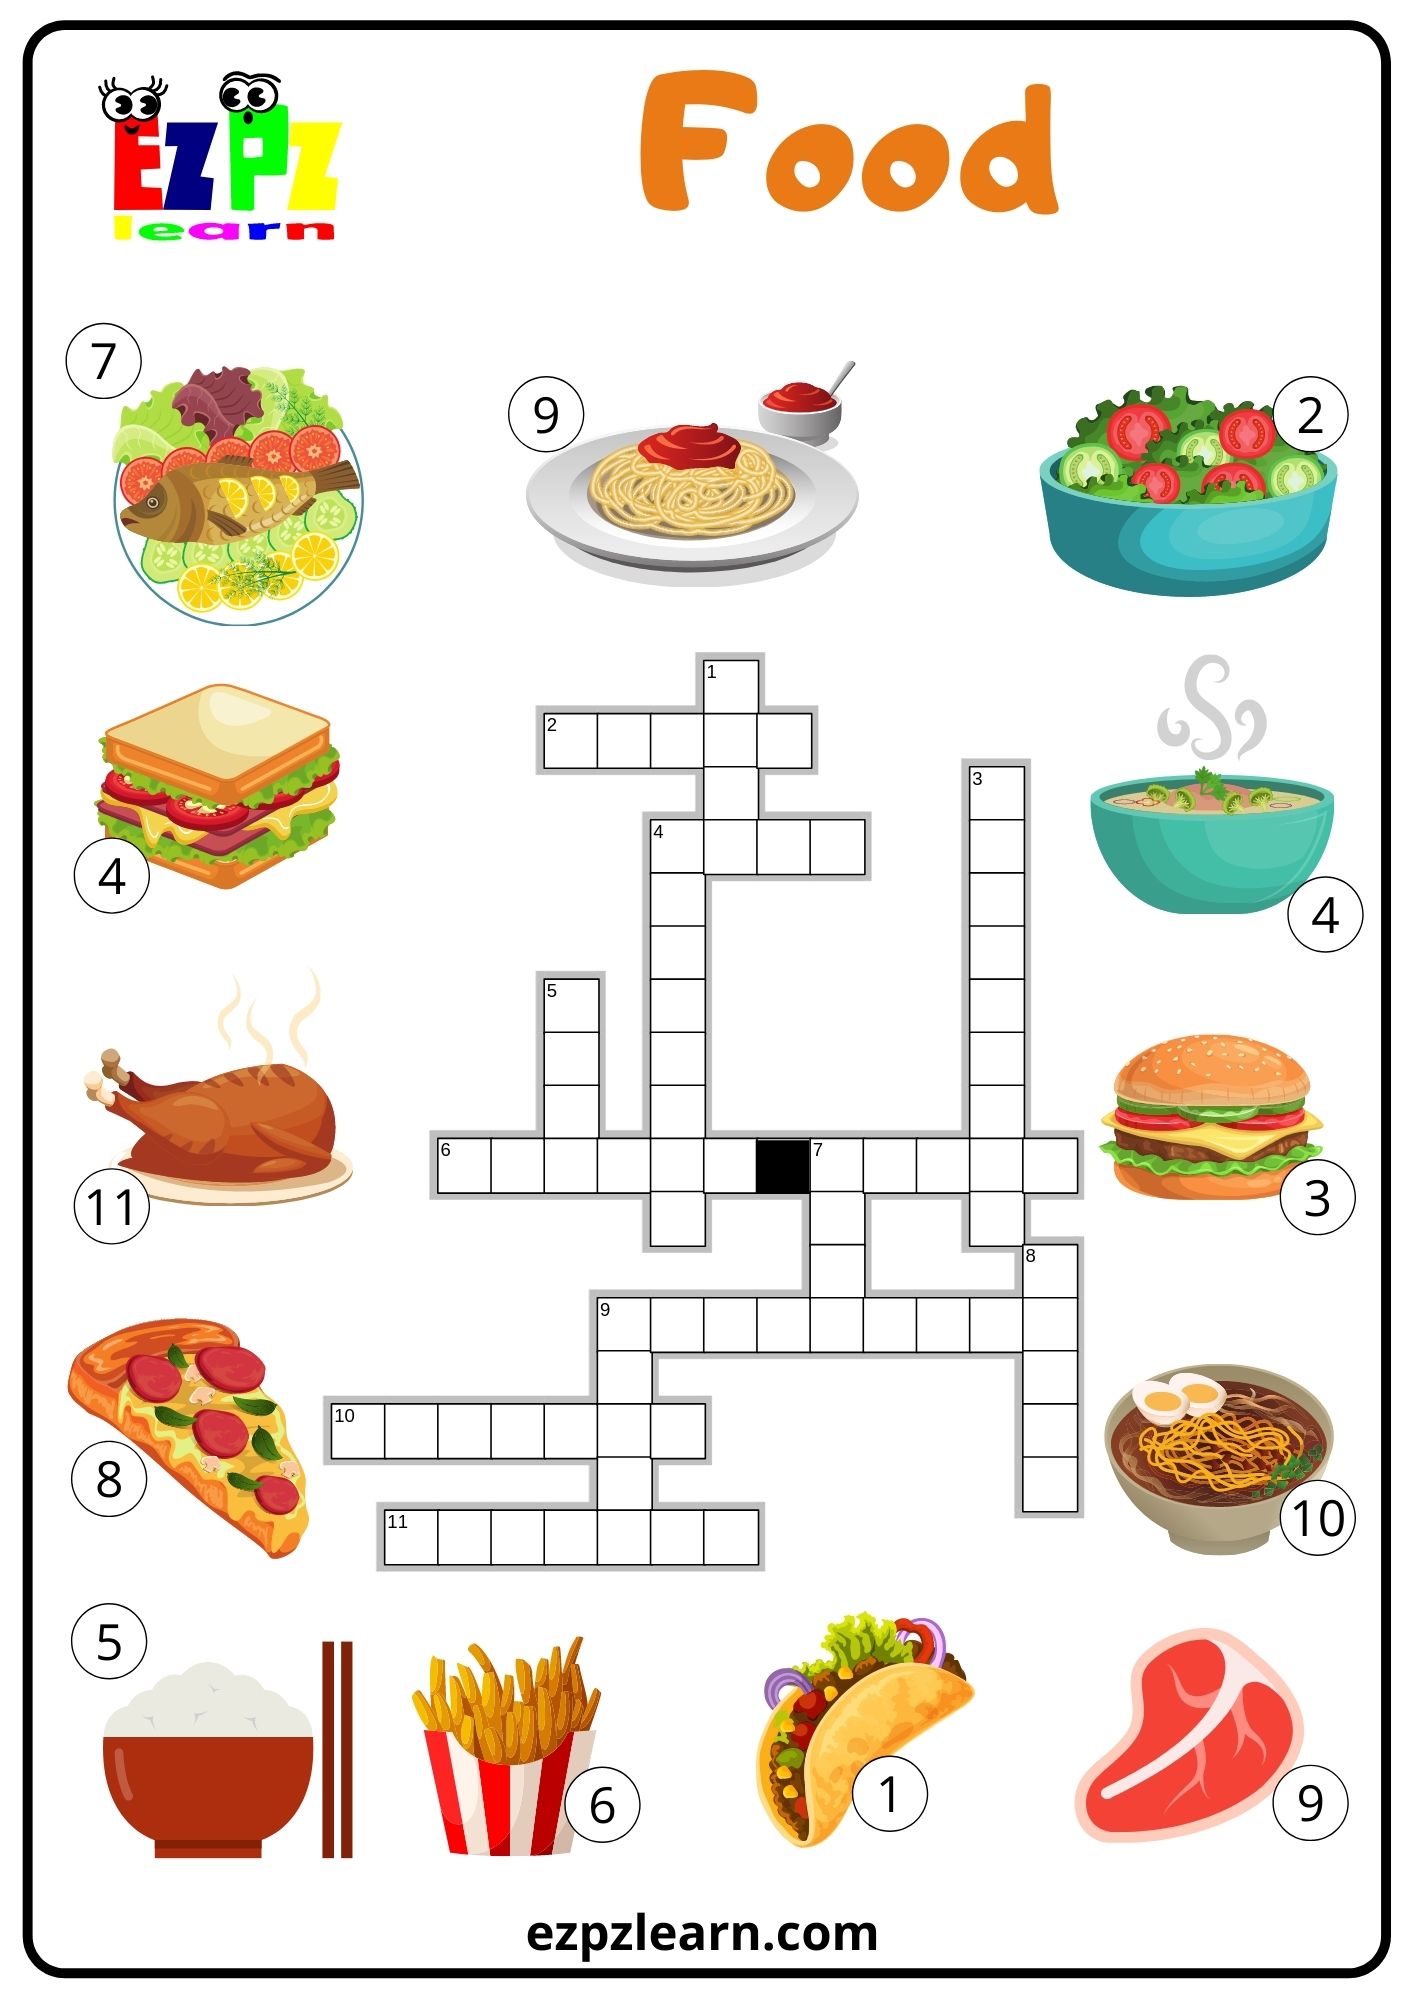 food-crossword-ezpzlearn